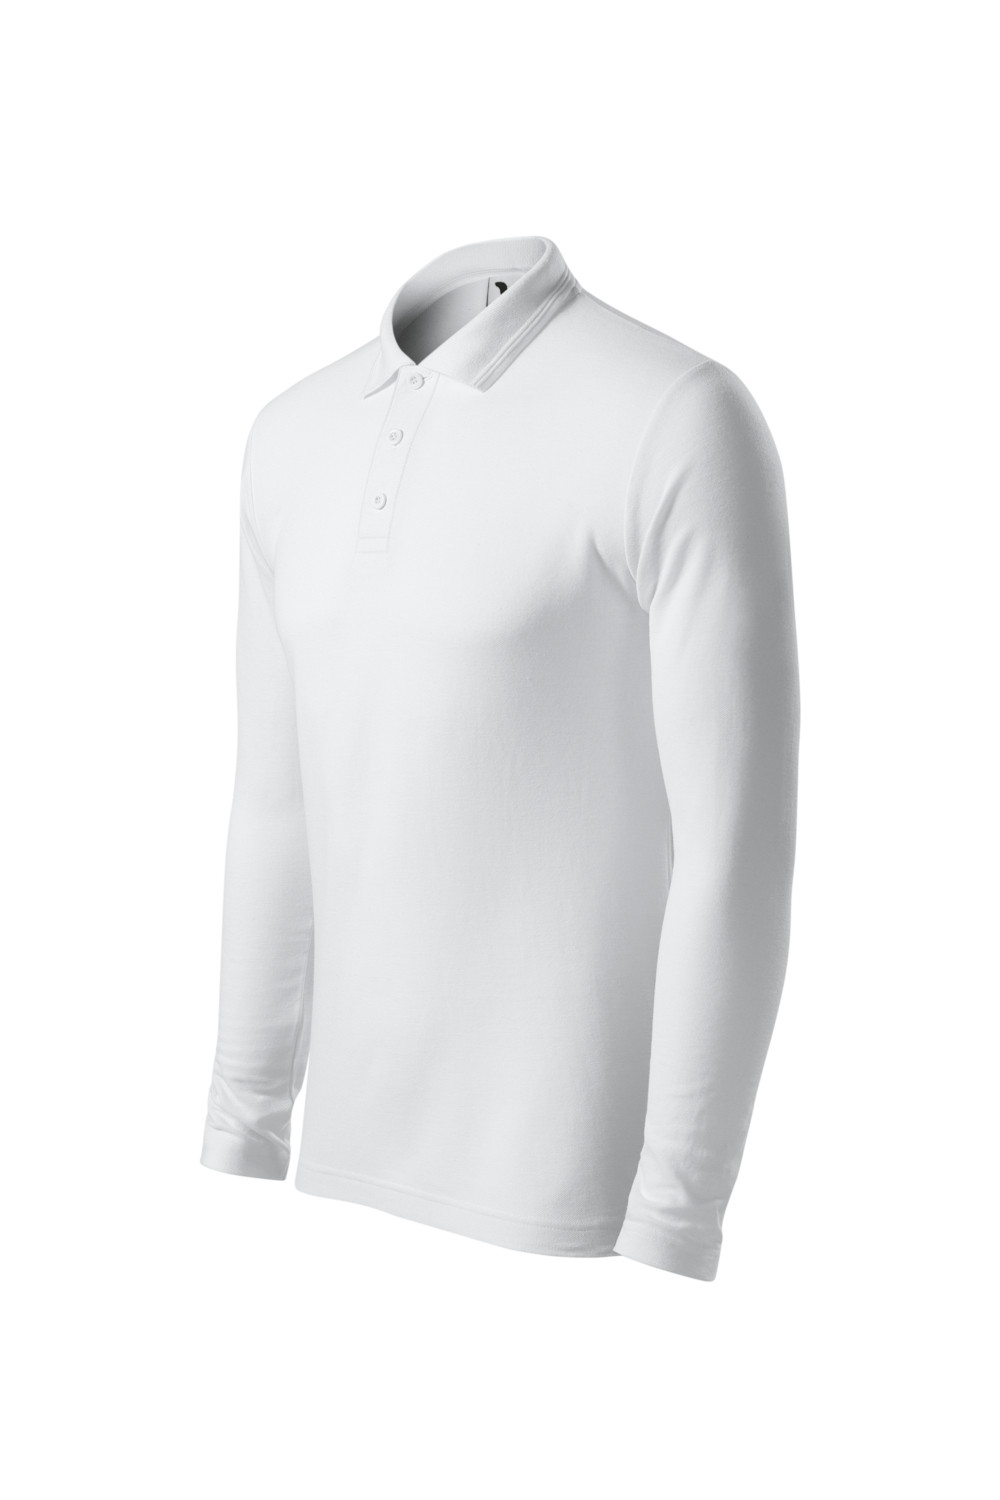 Koszulka Polo męska z długim rękawem 221 polo biały